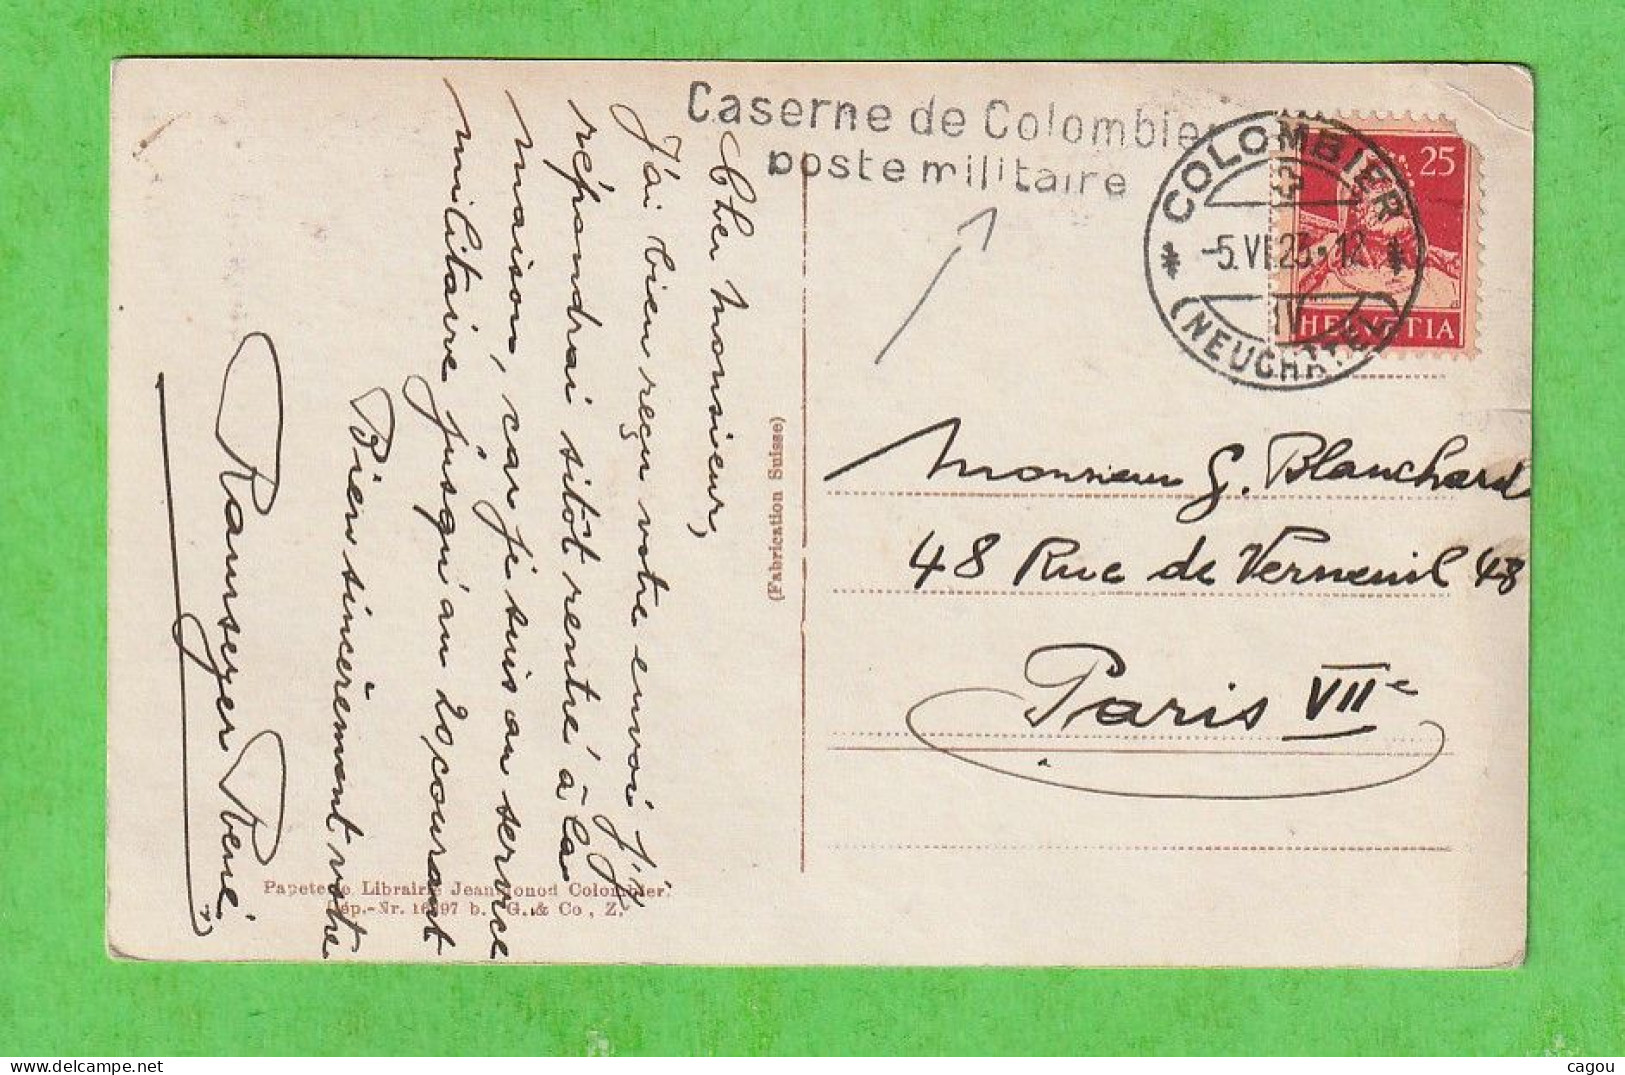 GRIFFE LINEAIRE CASERNE DE COLOMBIER POSTE MILITAIRE + CT COLOMBIER (NEUCHATEL) DE 1923 SUR CARTE COLOMBIER SUISSE - Postmarks